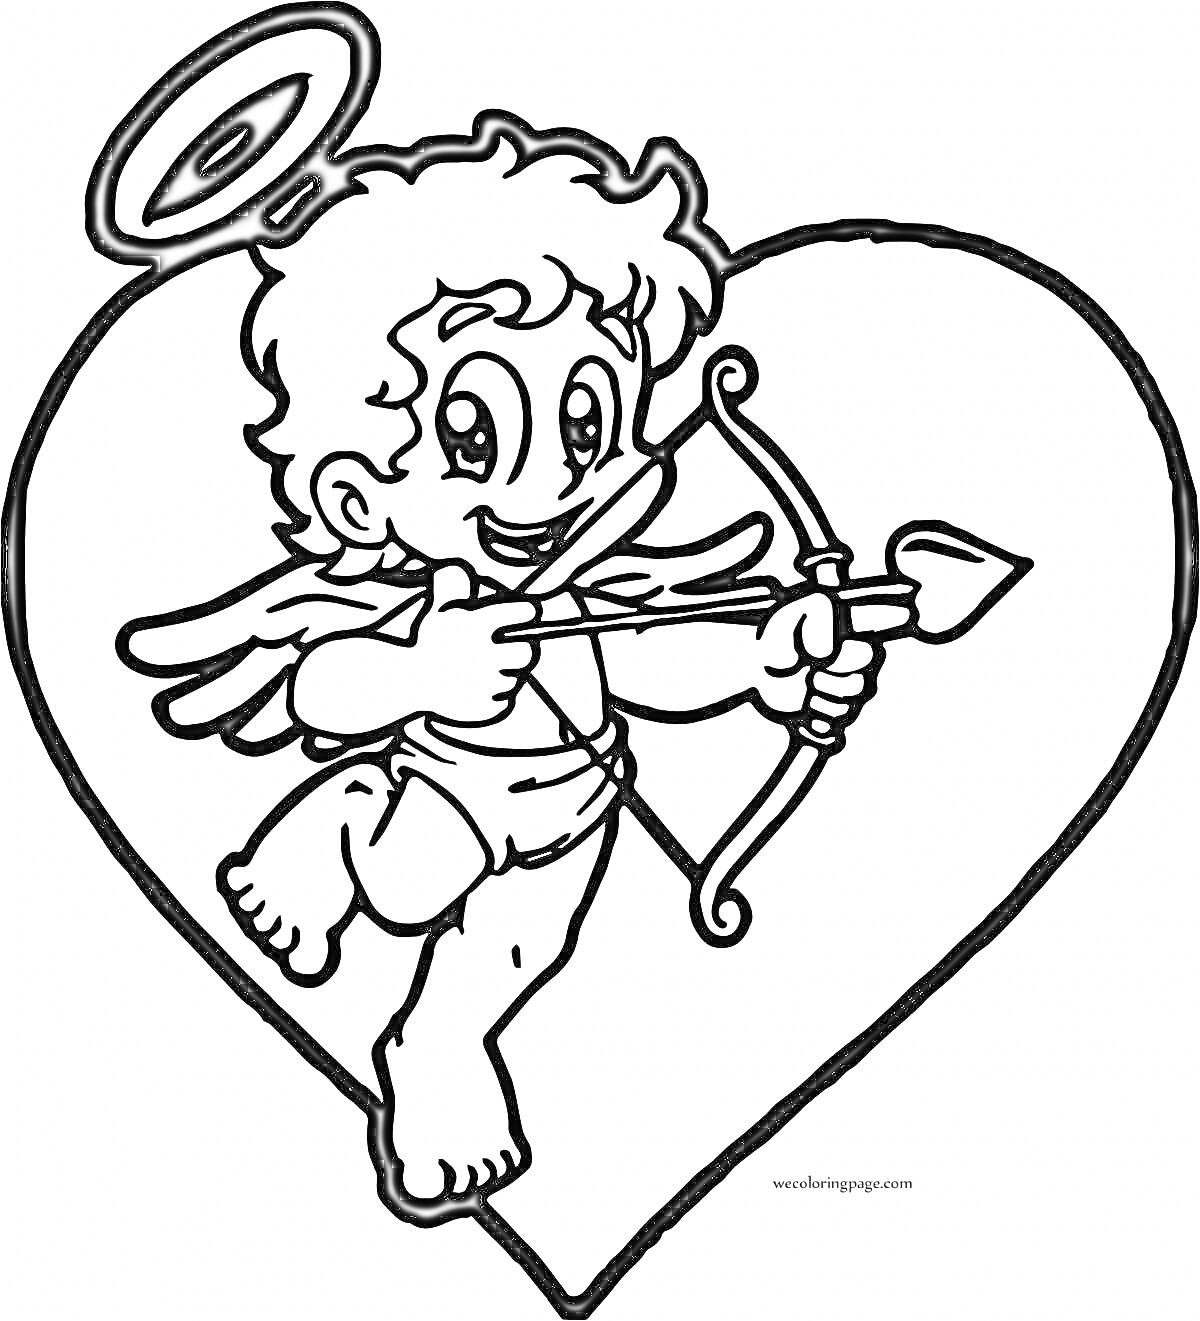 Раскраска Купидон с крыльями и луком внутри сердца